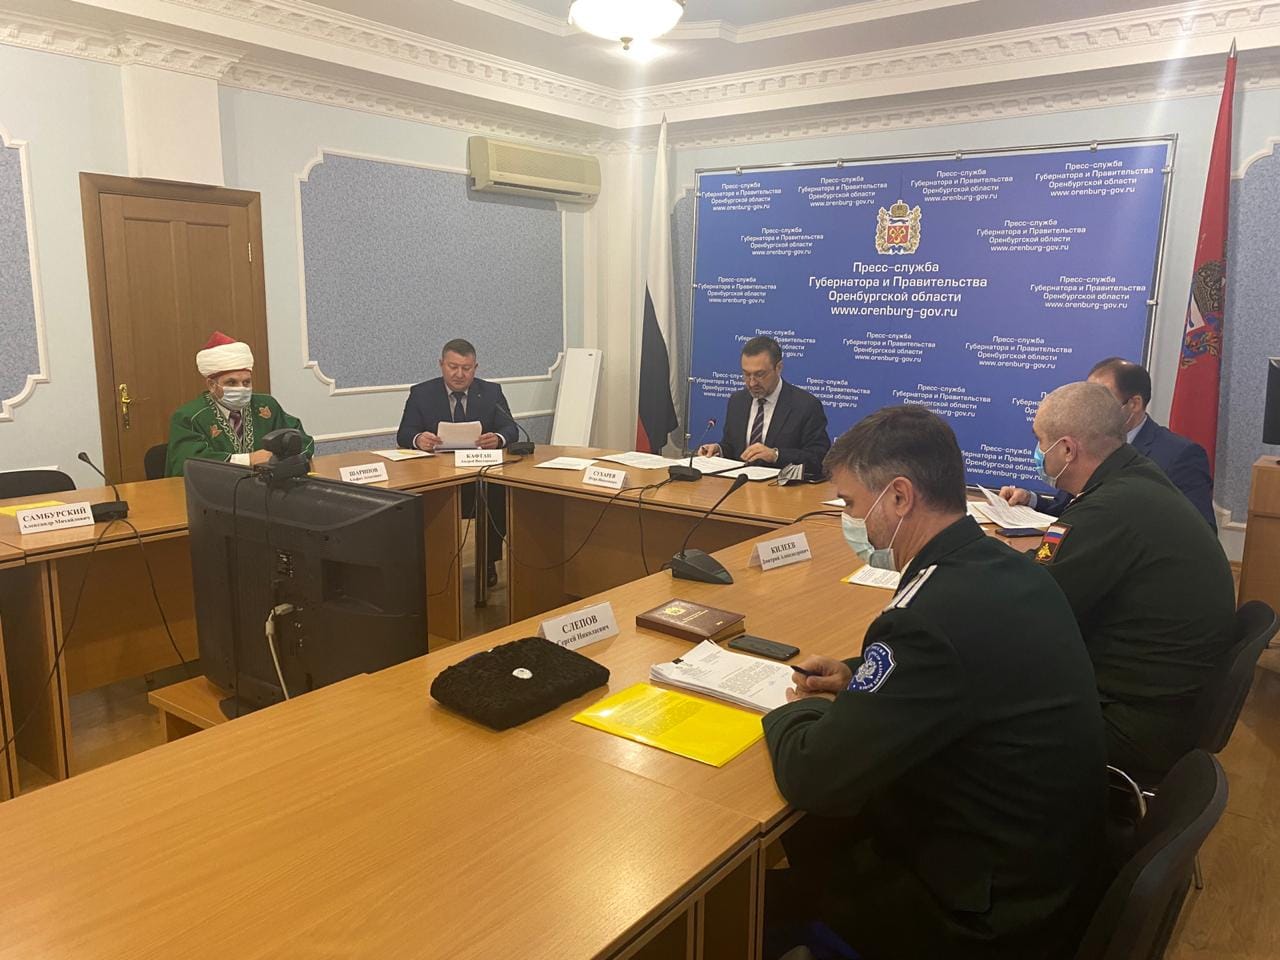  Казачество и власть: совет при губернаторе Оренбургской области взял курс на организацию государственной службы казаков.